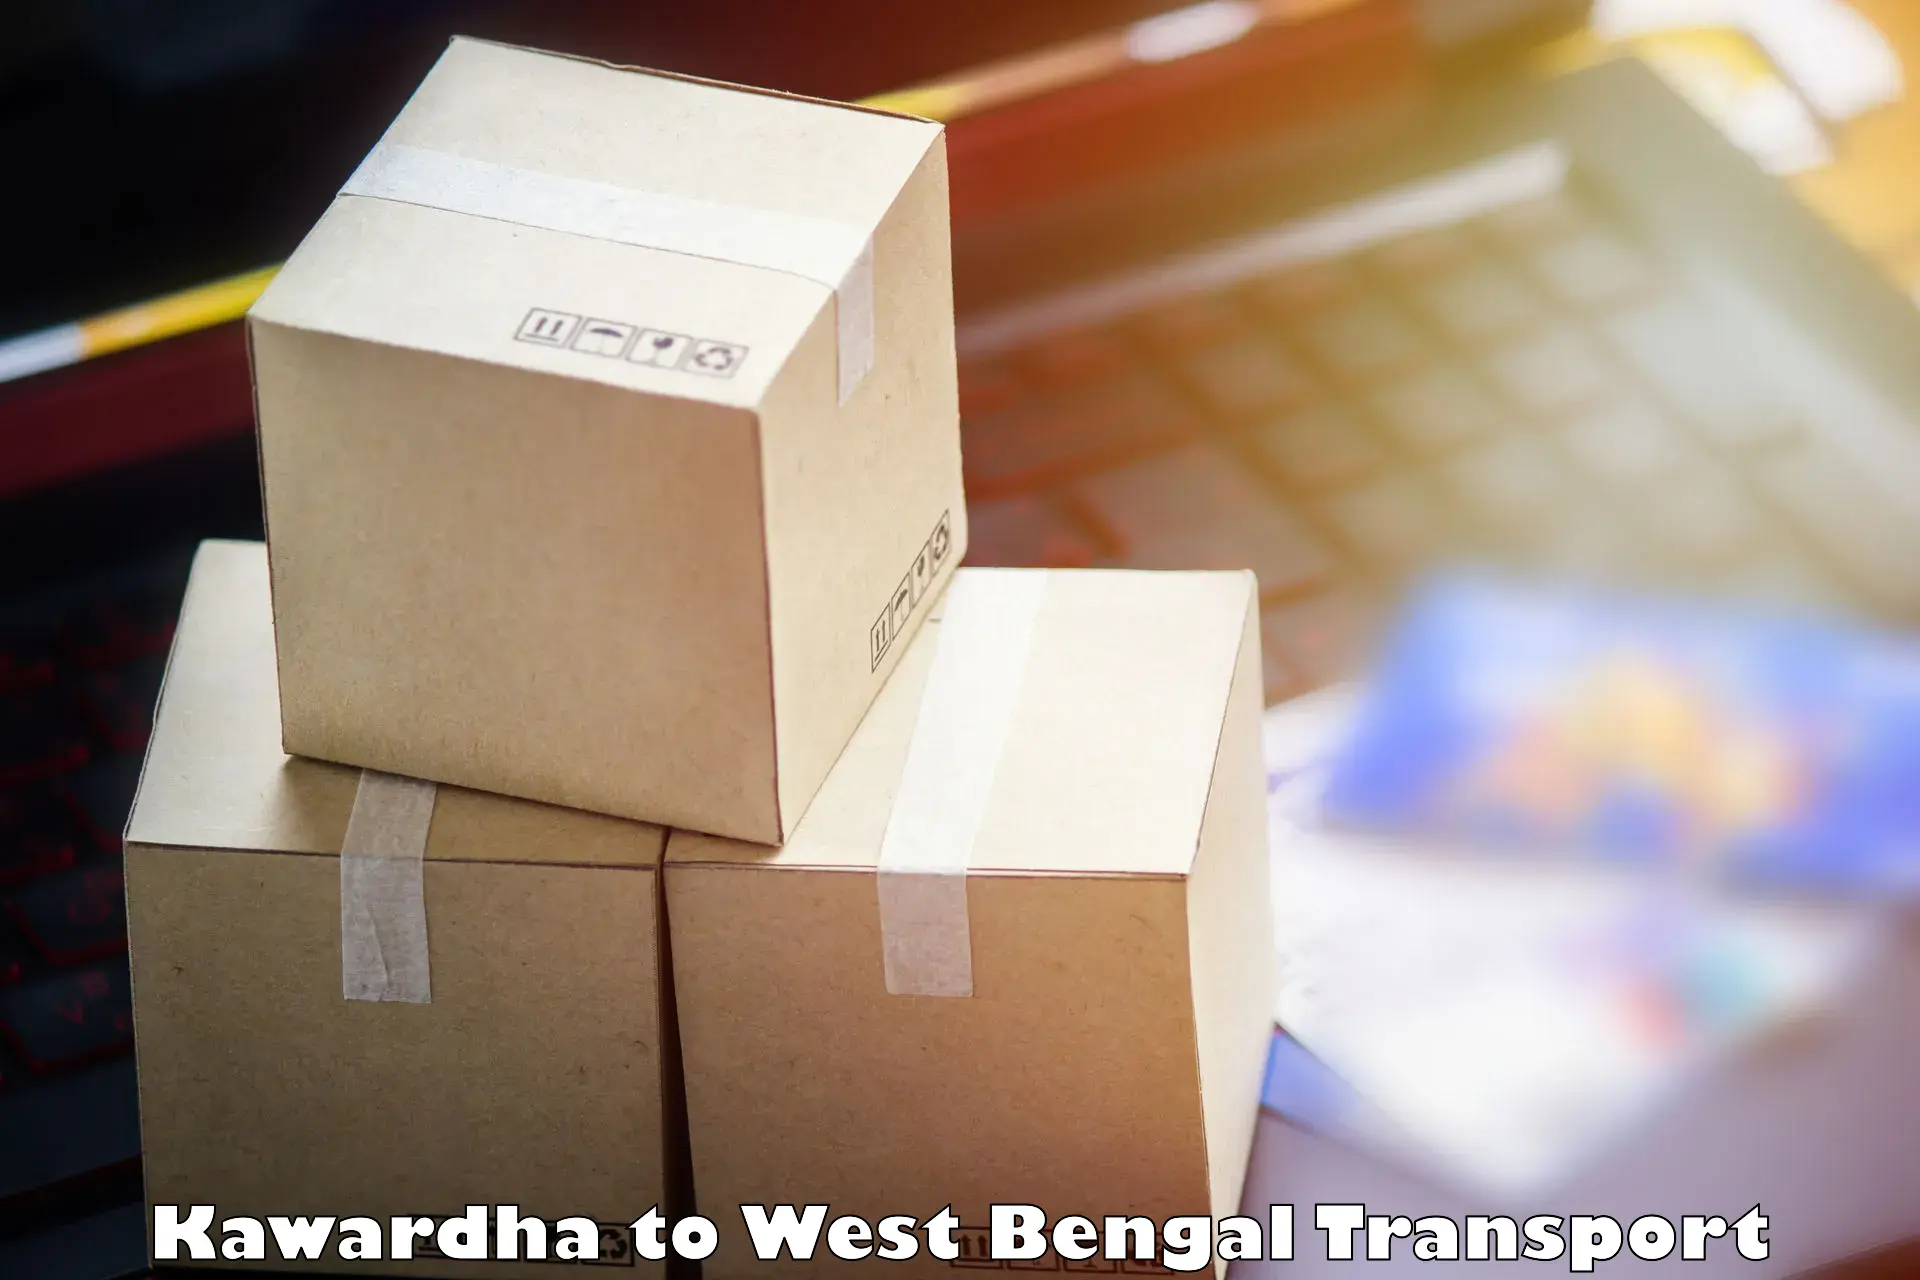 Shipping partner Kawardha to Berhampore